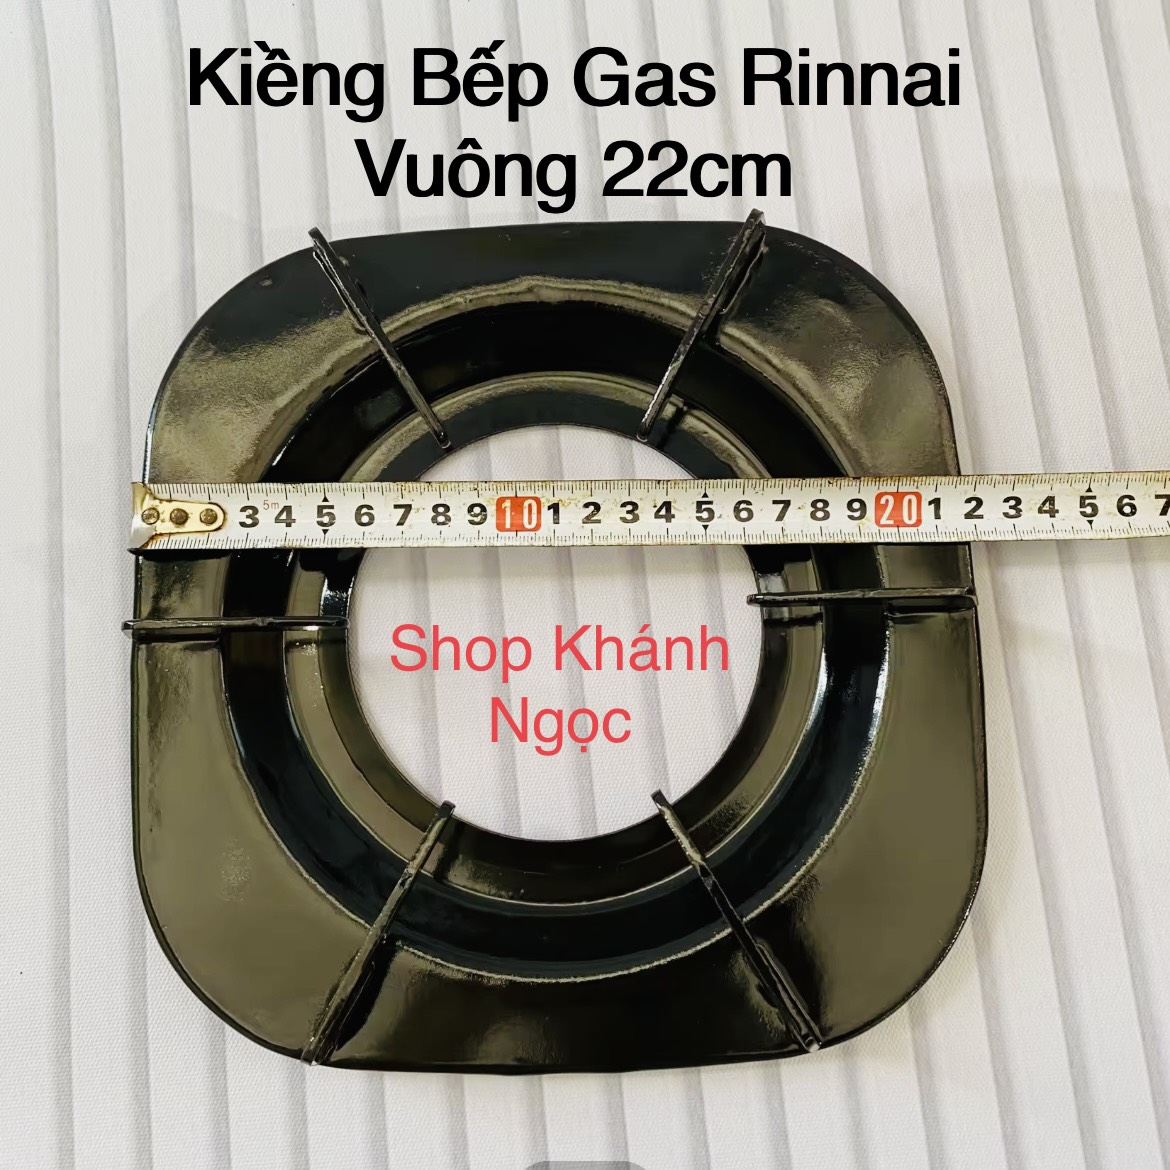 Bộ Ống điếu l Họng Đầu đốt mâm chia lửa RINNAI thay thế Bếp gas đôi RINNAI RV-260 / RV-270 / RV-360 / RV-370 - phụ kiện bếp gas rinnai